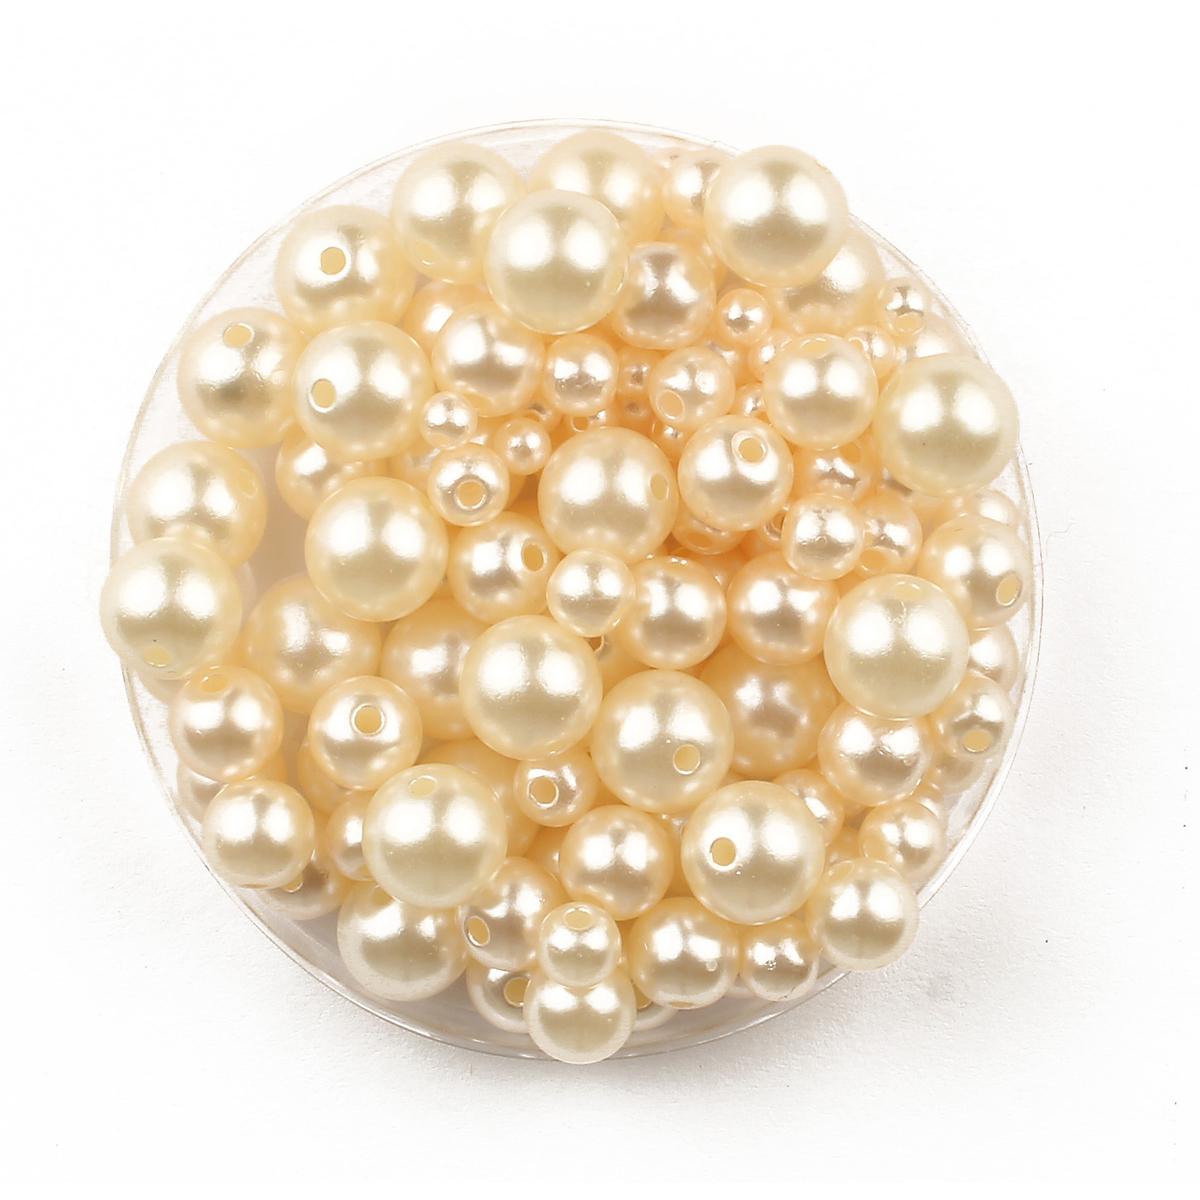 Perles acrylique nacrées rondes 0,4 à 1 cm x 10 g